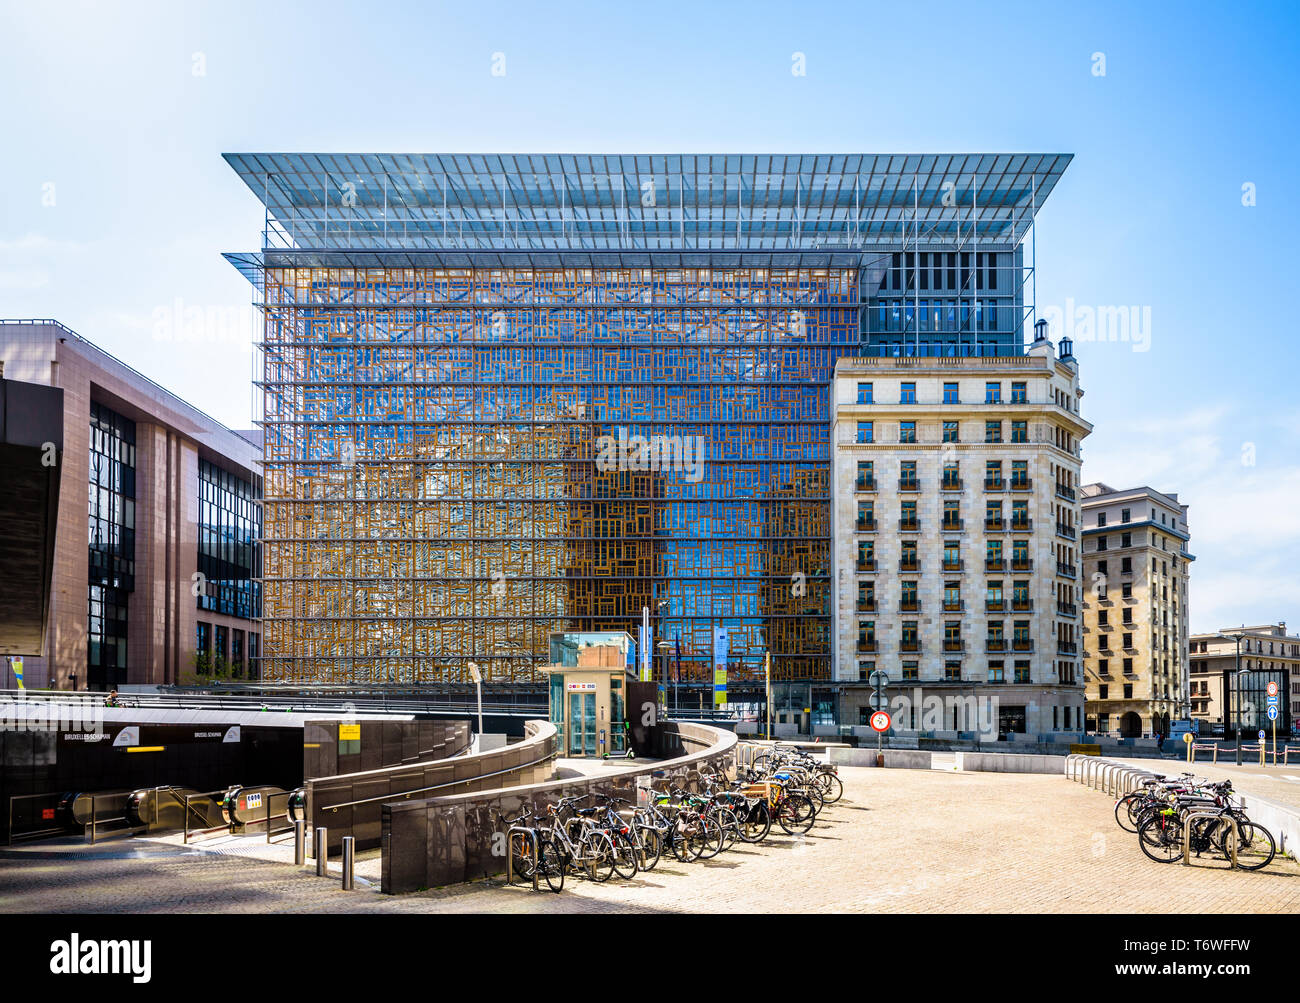 Vista anteriore dell'Europa edificio, sede del Consiglio dell'Unione europea  a Bruxelles, Belgio, con biciclette parcheggiate in primo piano Foto stock  - Alamy